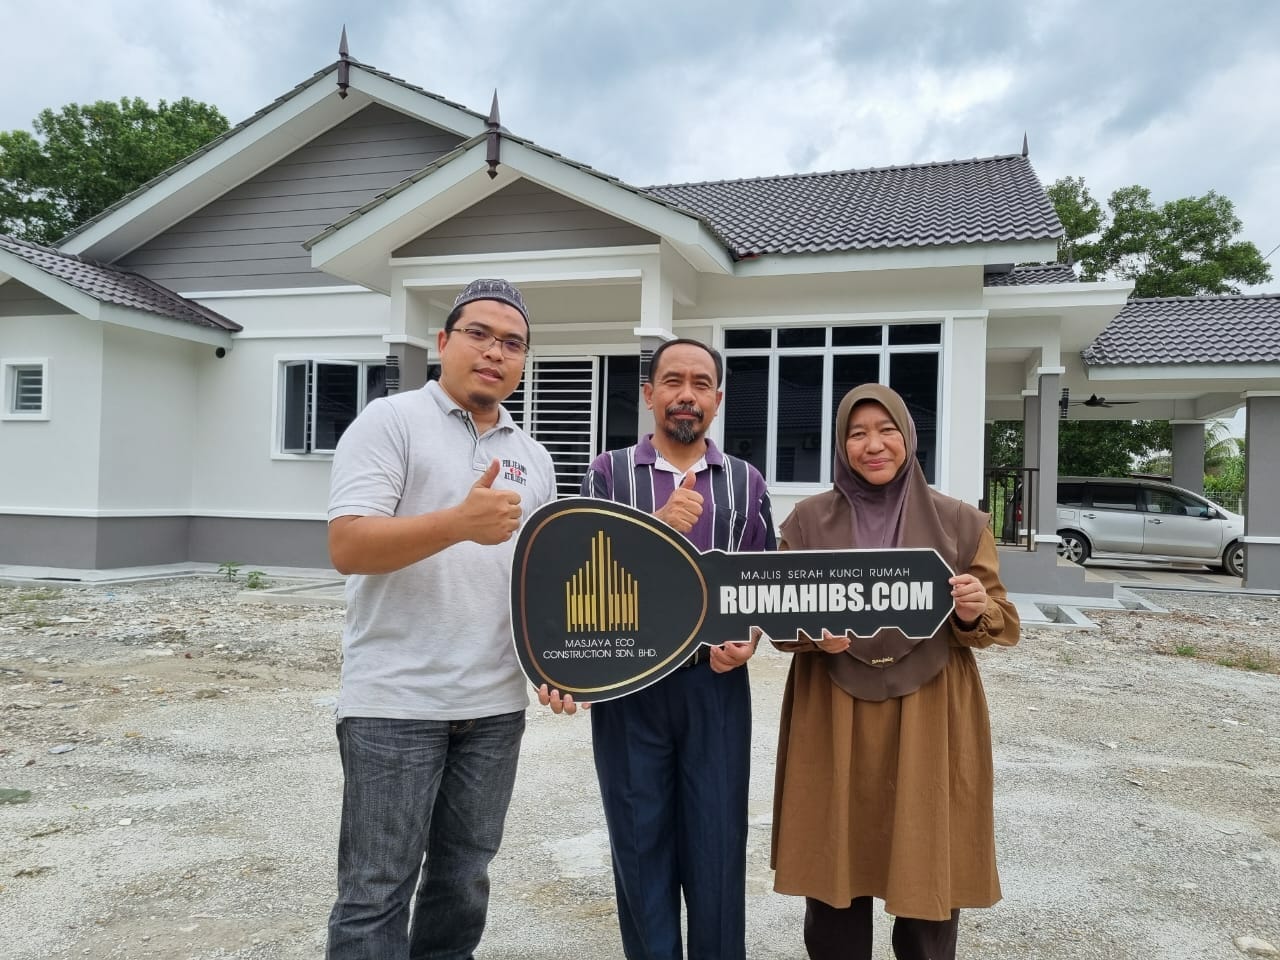 Pembinaan Rumah IBS di Malaysia: Inovasi Bina Rumah atas Tanah Sendiri dengan Masjaya Eco Construction